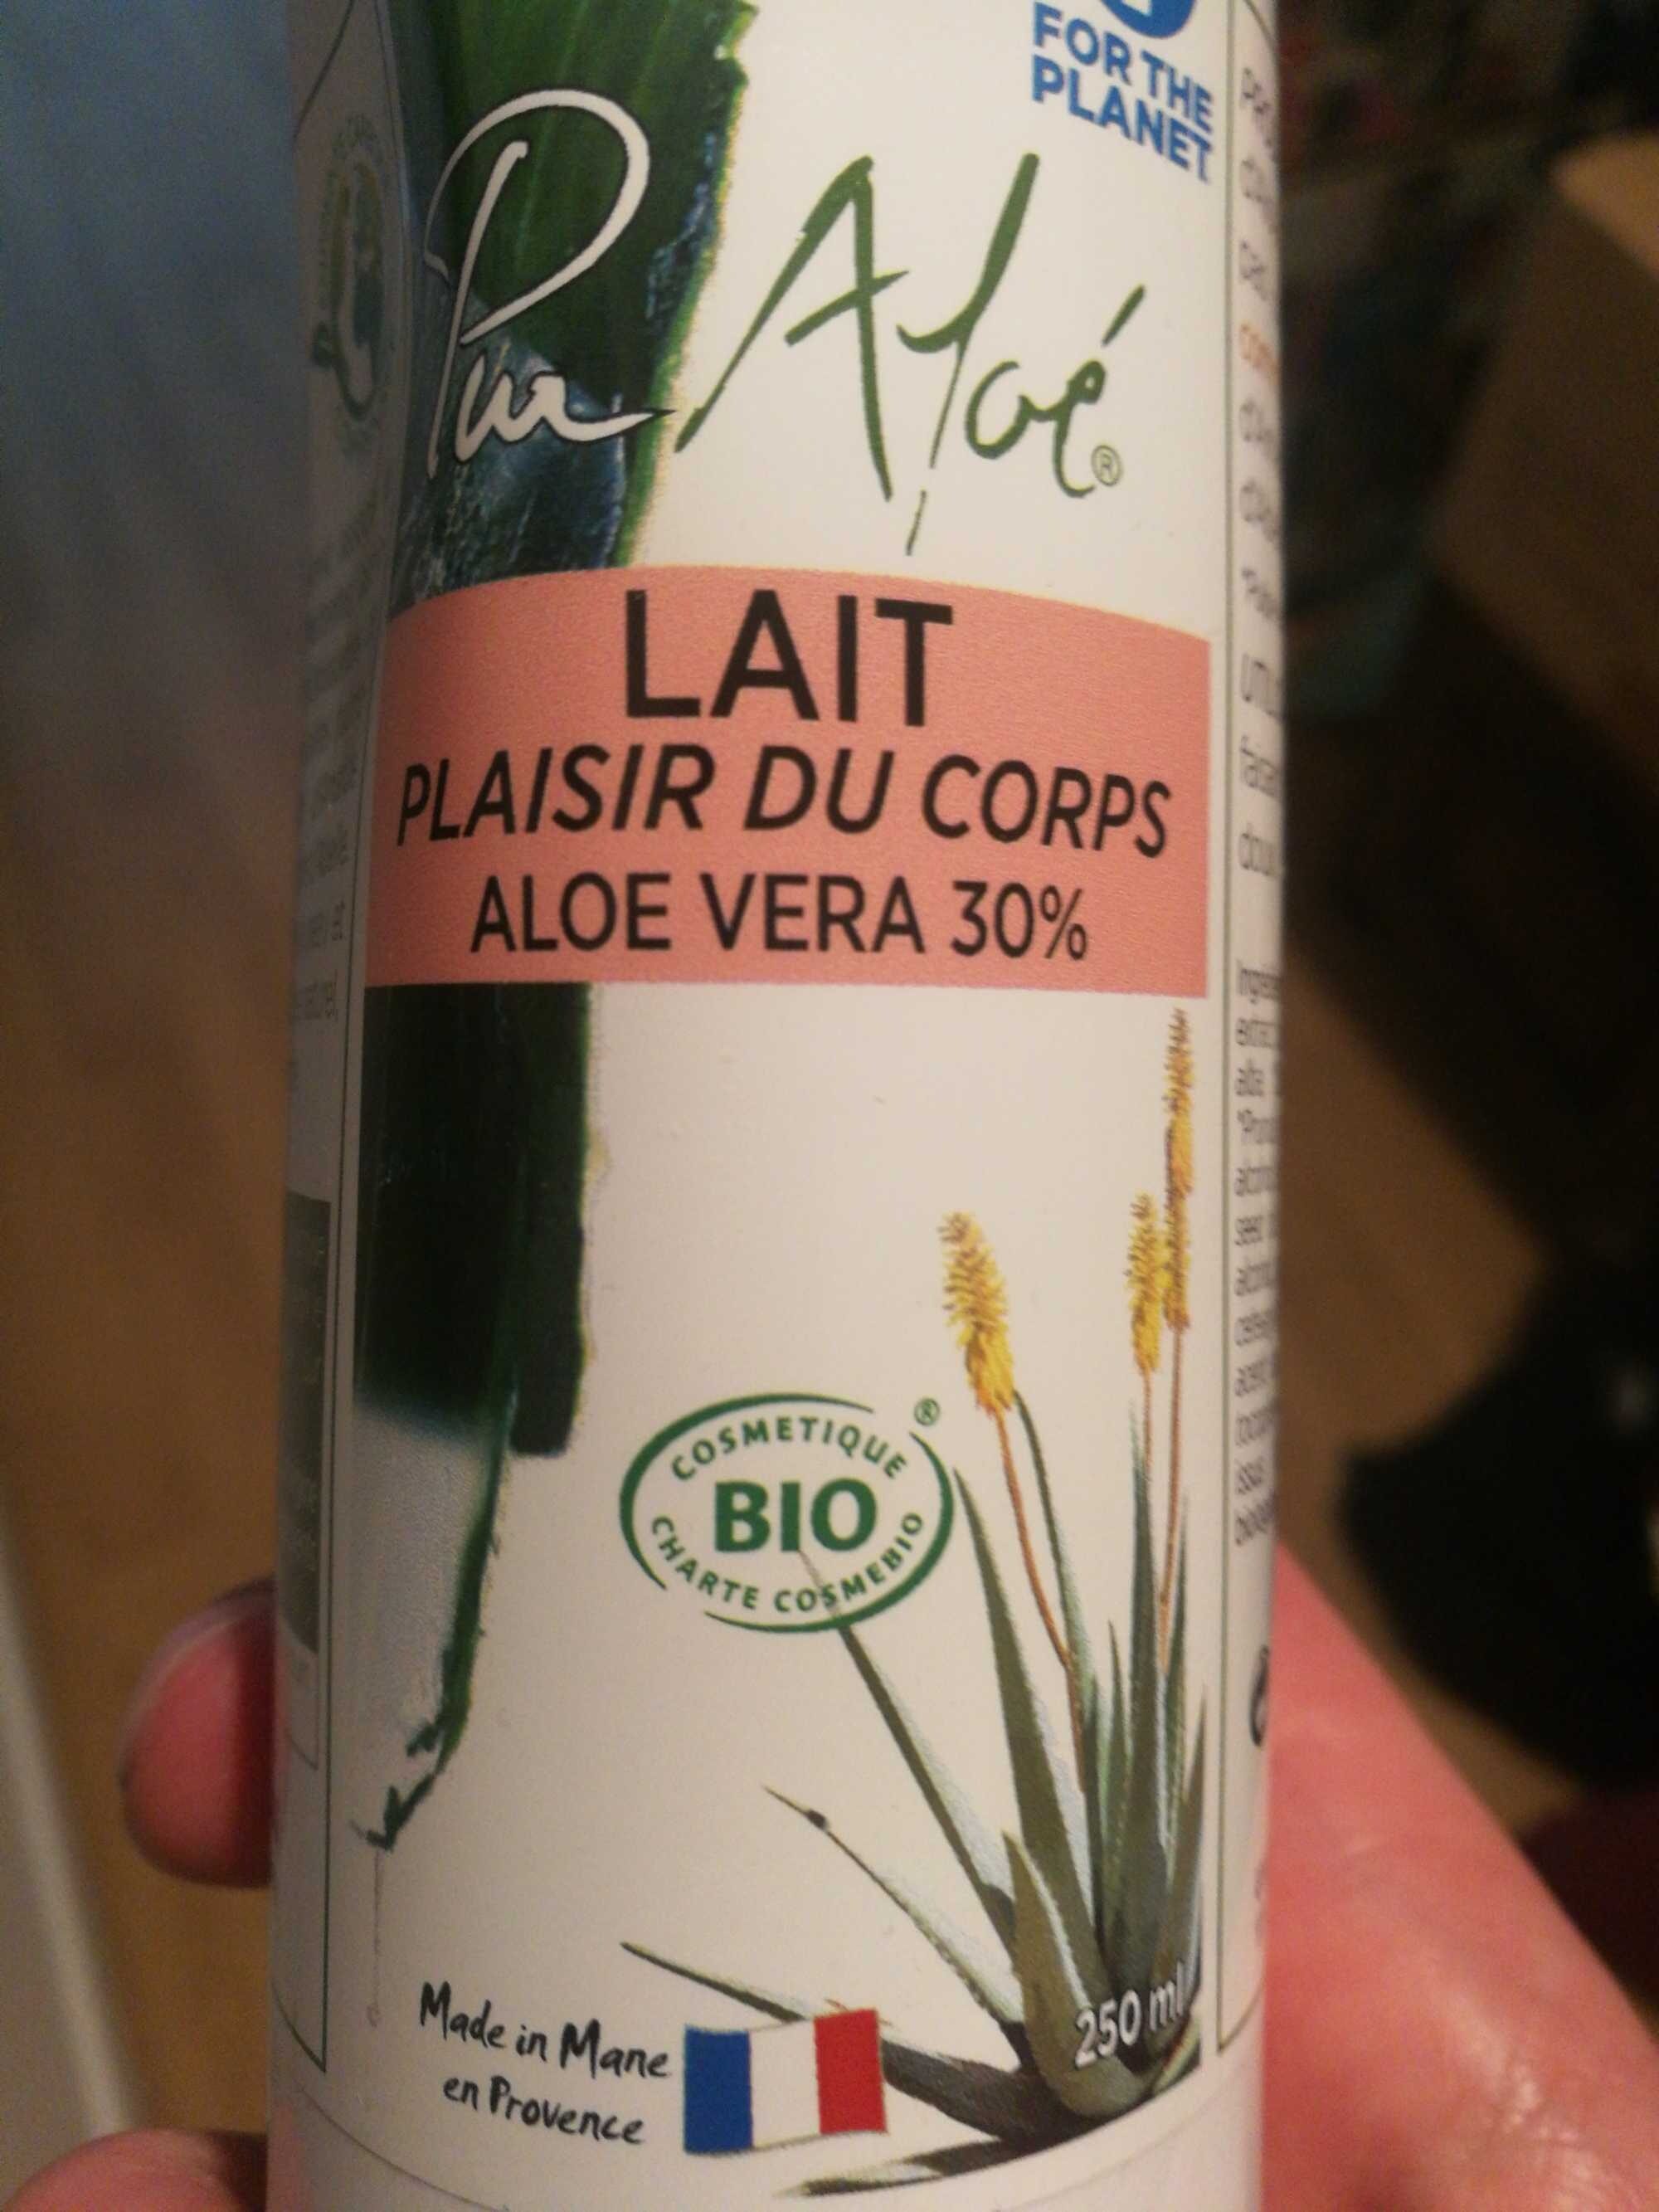 Lait plaisir du corps Aloe Vera 30% - Продукт - fr